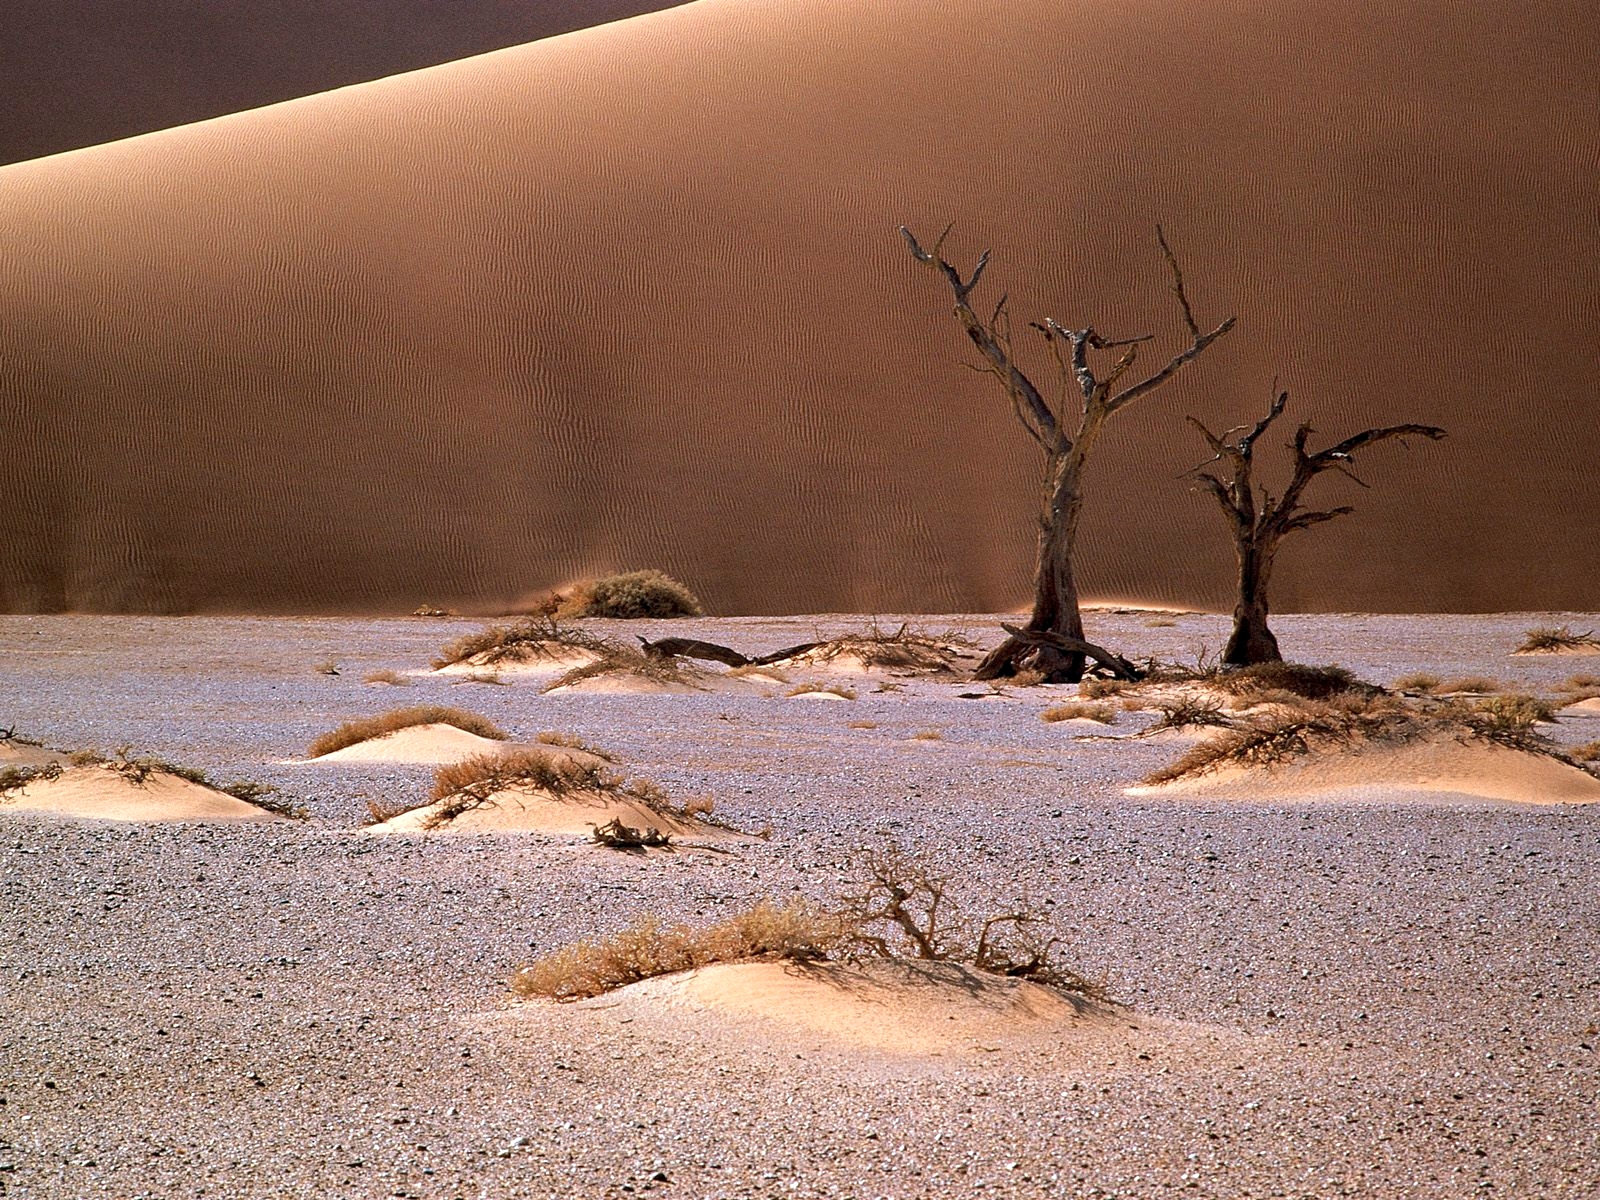 Море на сотни миль вокруг казалось пустынным. Инсталляция «дыхание пустыни». Пустыня песок. Засохшее дерево в пустыне.